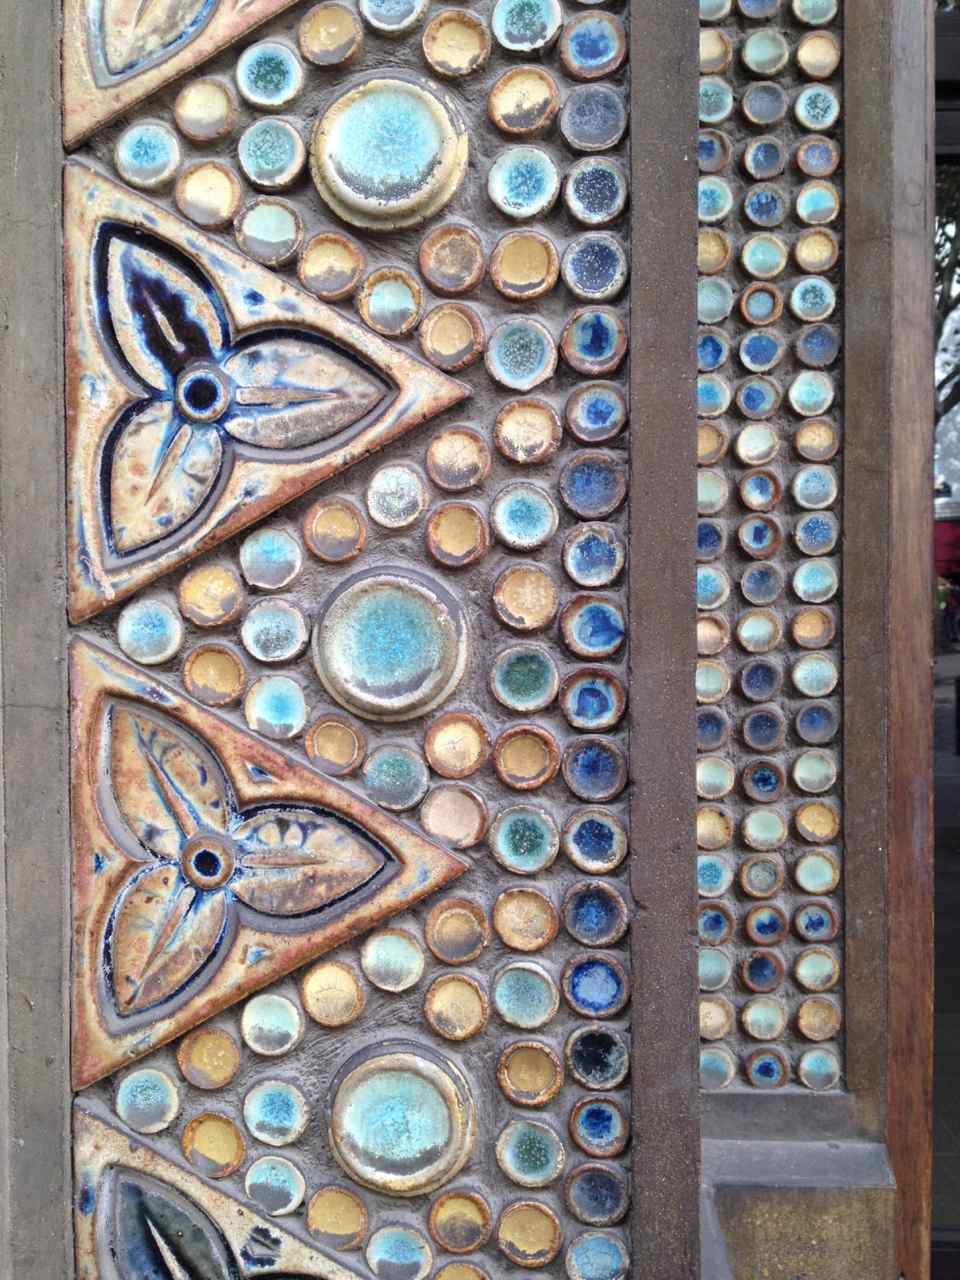 Modernist Ceramic trifoils and dots, St-Jean-de-Montmartre, Paris